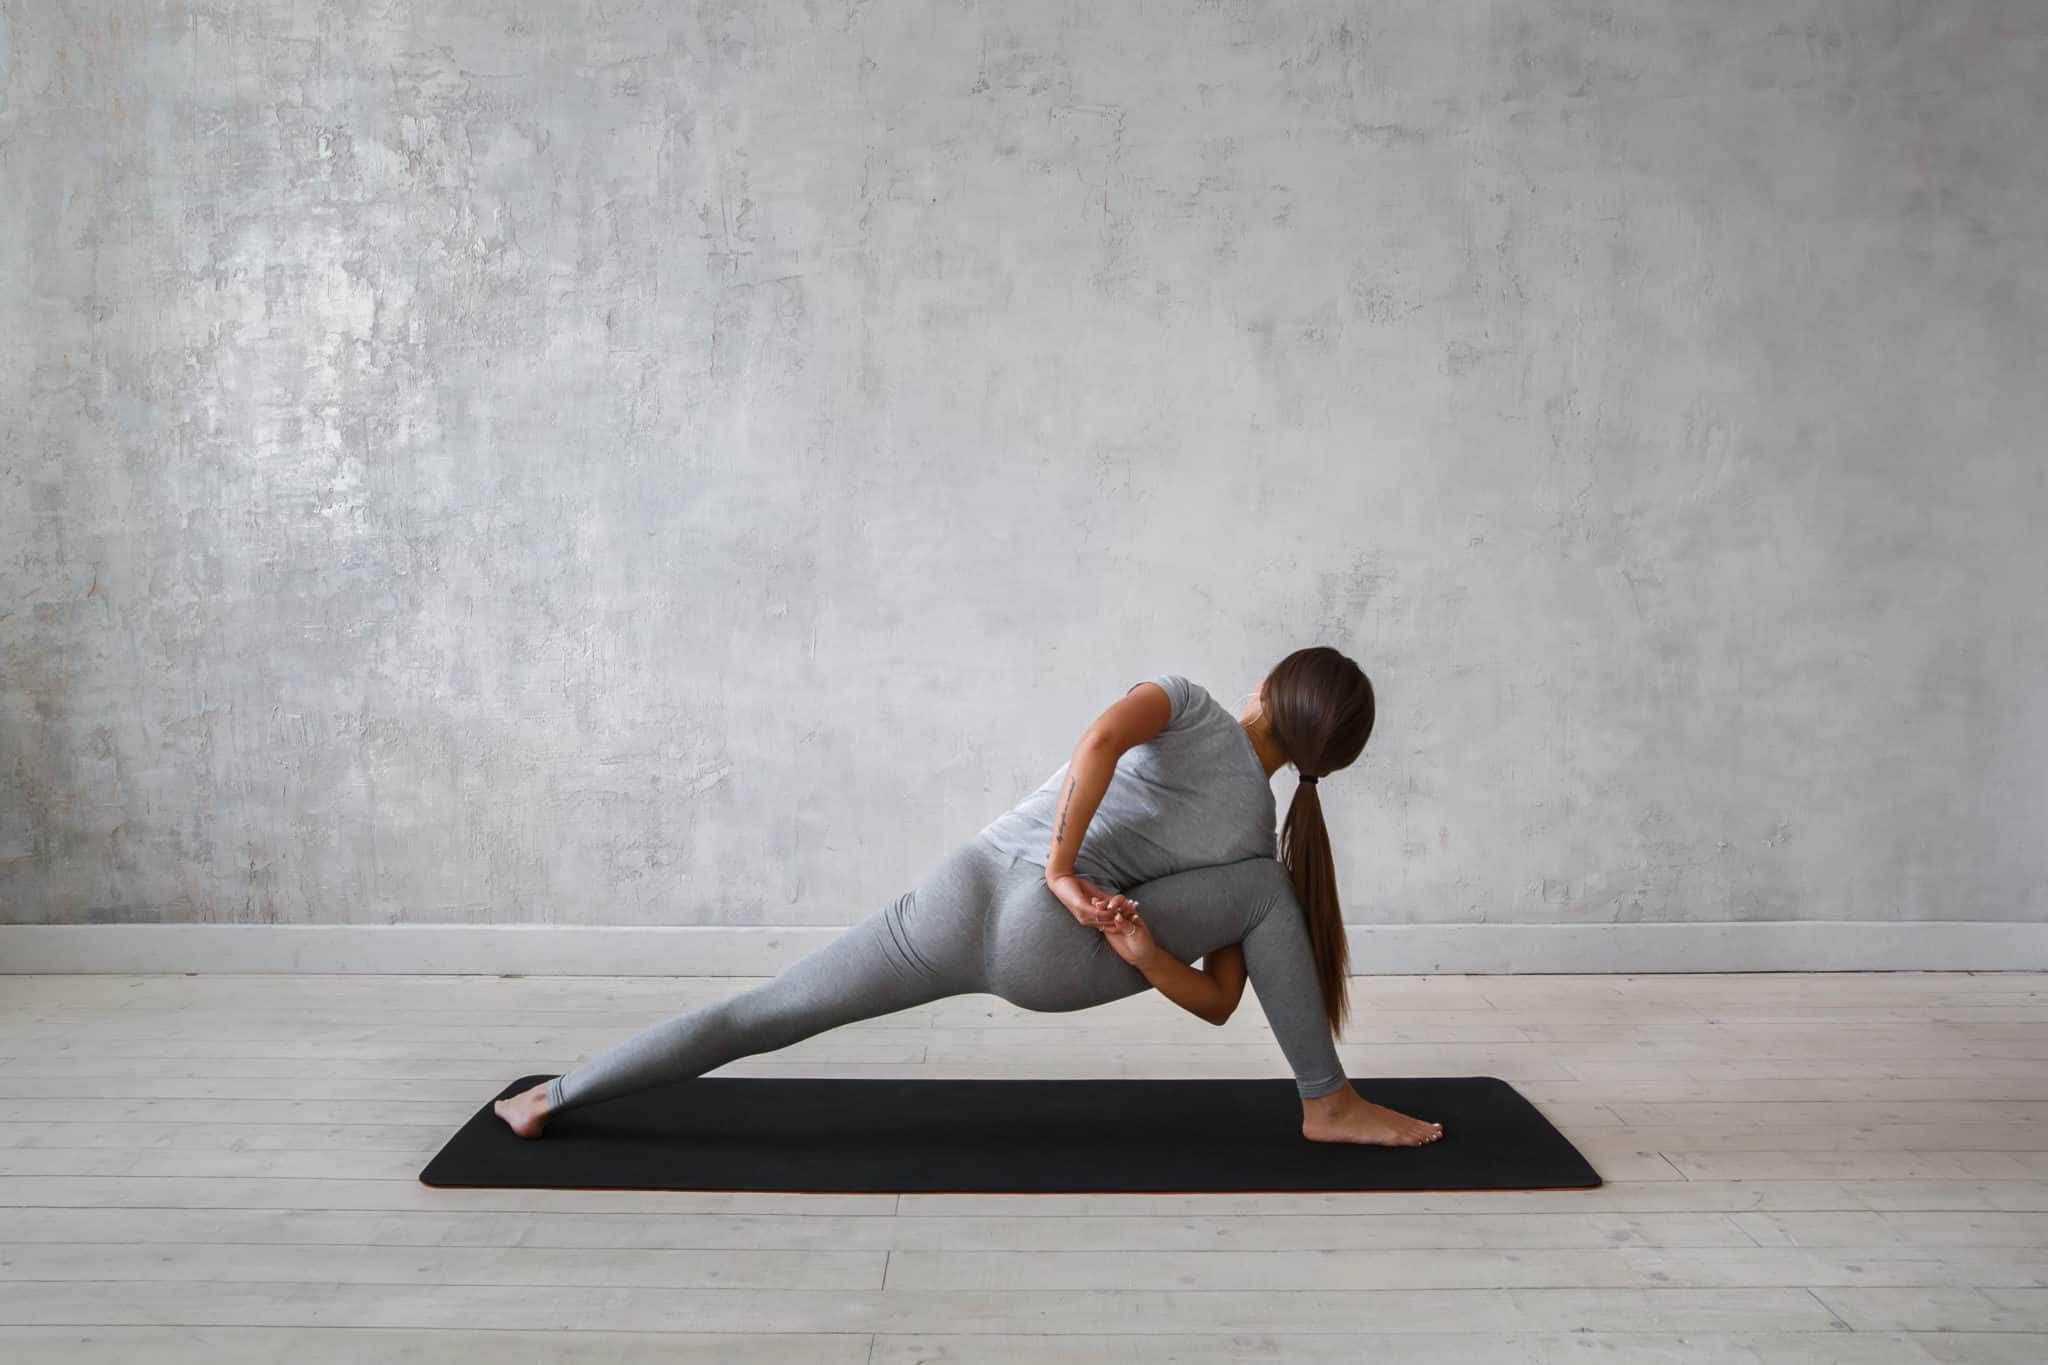 Woman doing yoga pose